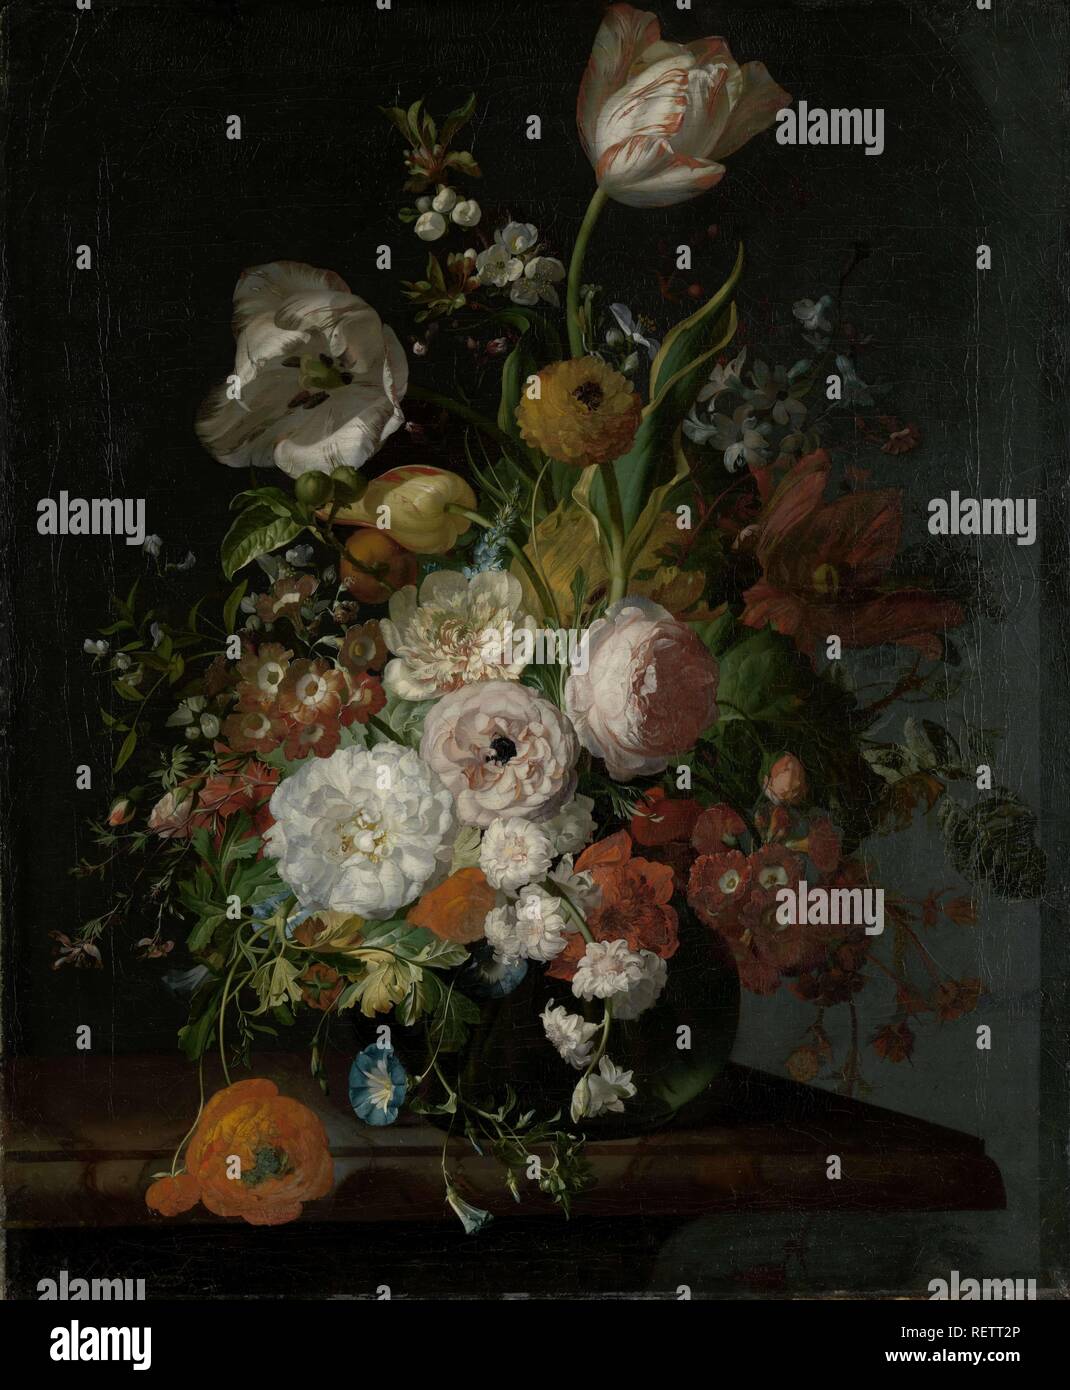 Stillleben mit Blumen in einer Glasvase. Dating: C. 1690 - C. 1720. Maße: H 65 cm x W 53,5 cm. Museum: Rijksmuseum, Amsterdam. Autor: Rachel Ruysch. Stockfoto